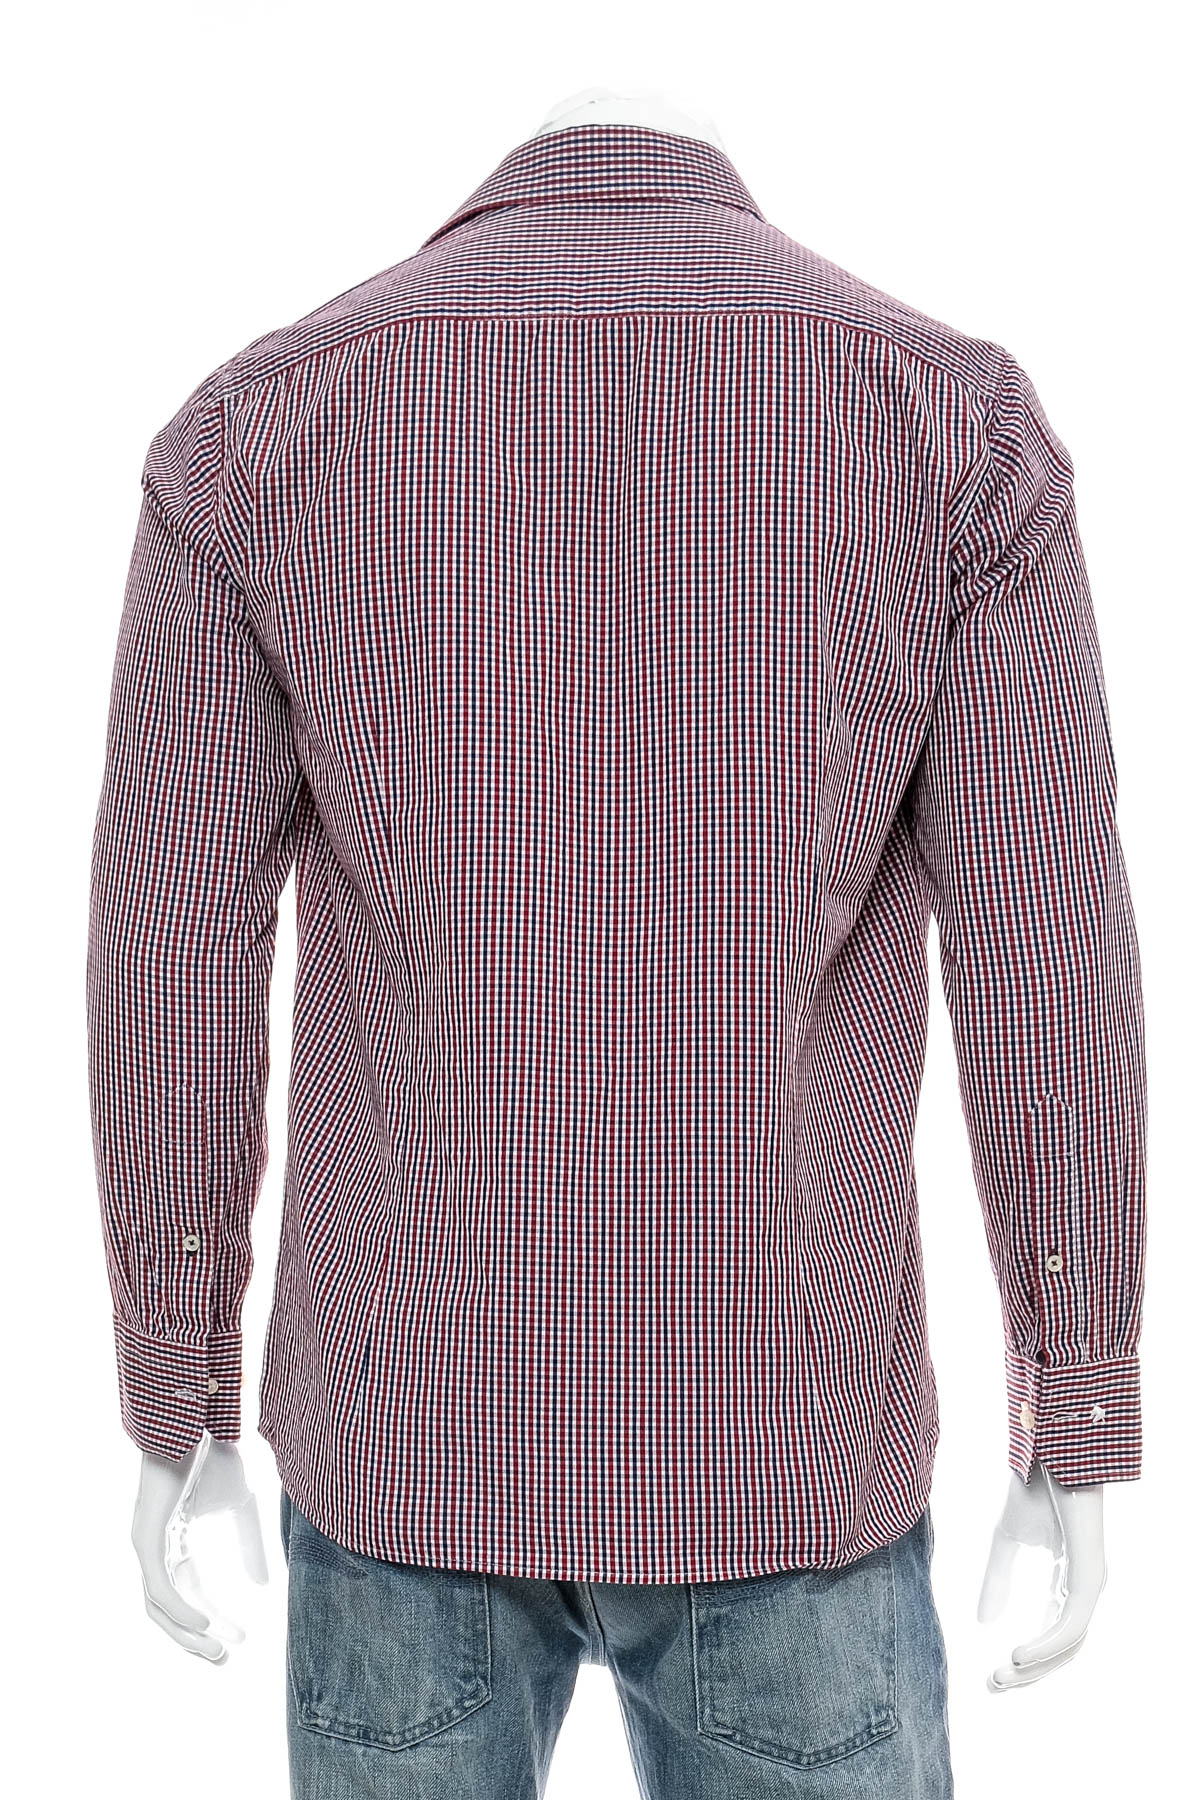 Men's shirt - Einhorn - 1